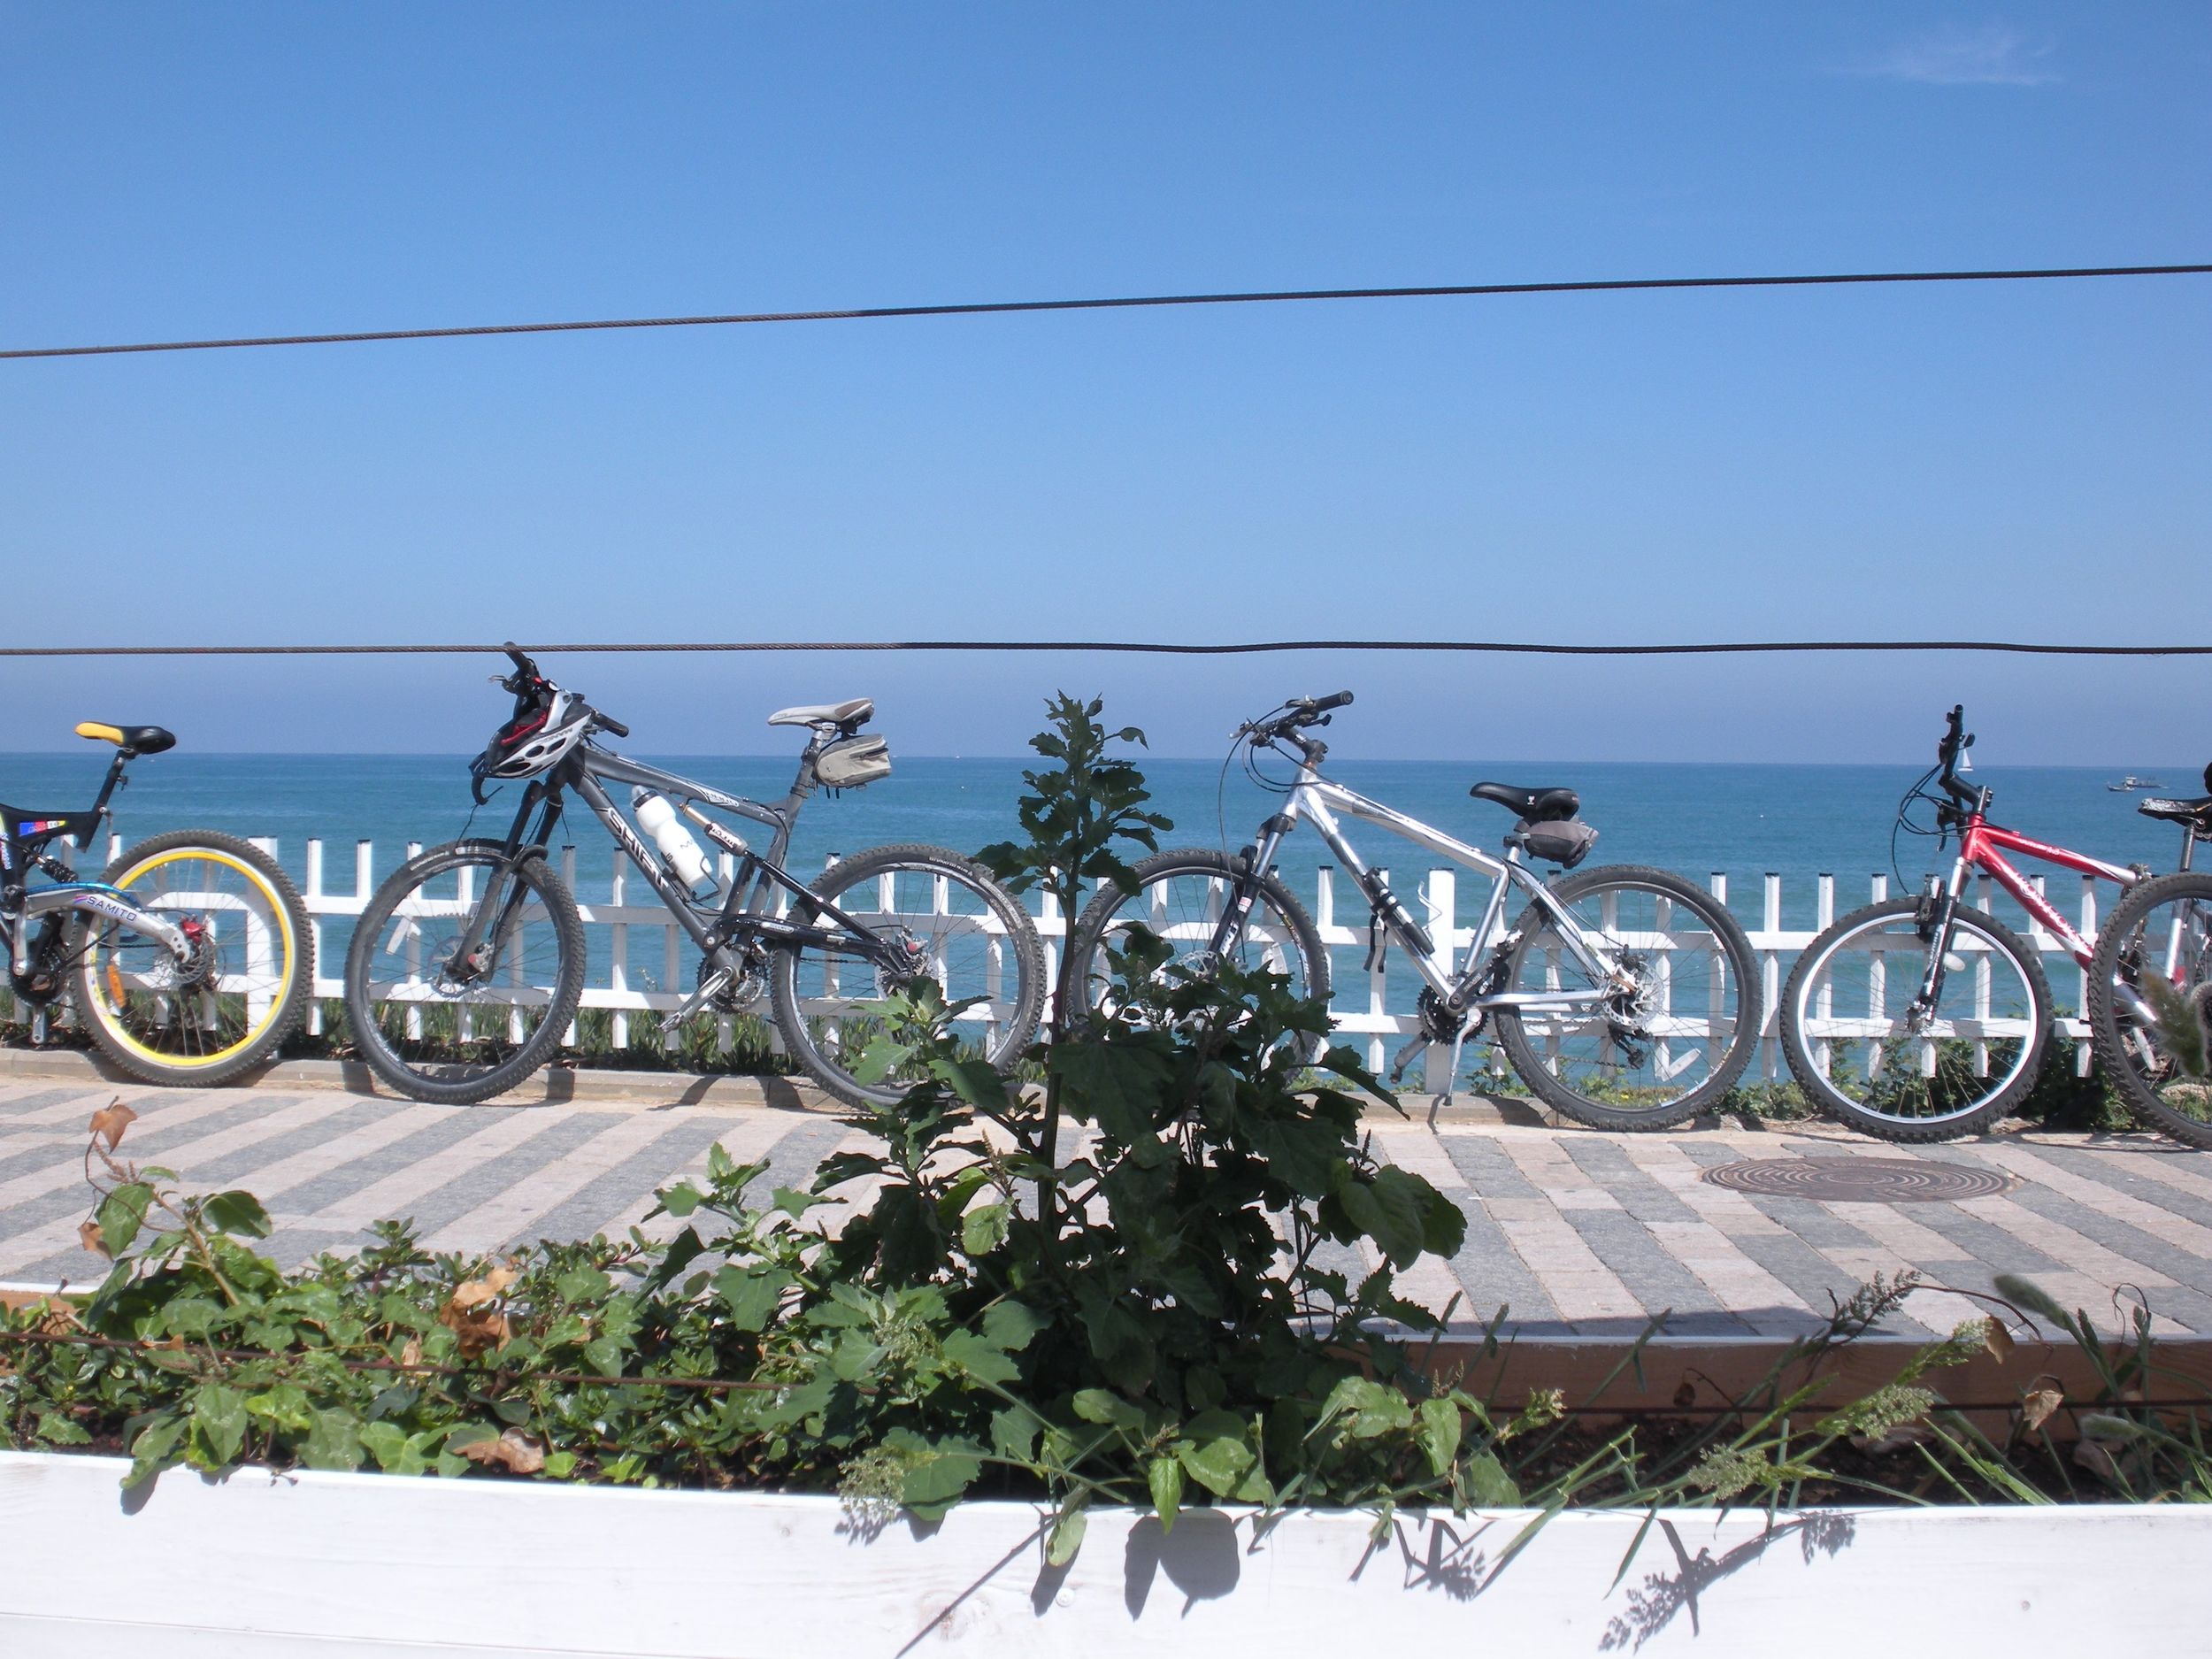 Copy of bikes on the promenade tel aviv.jpg